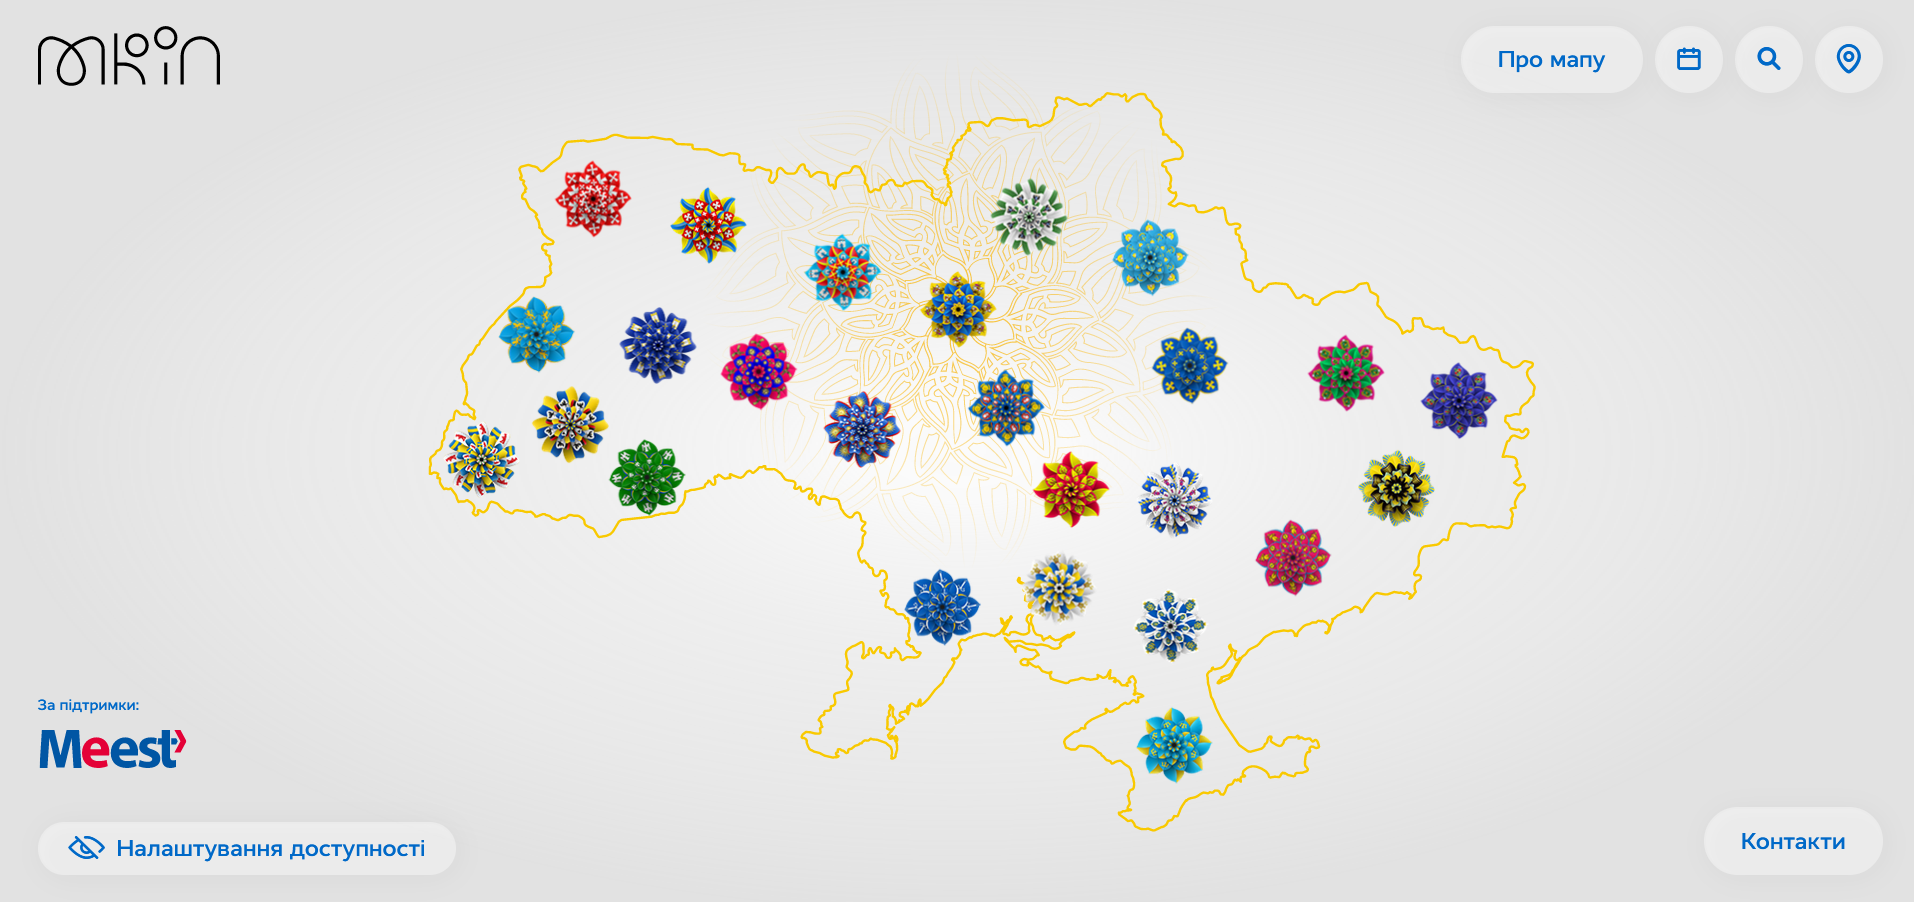 Карта отражает все регионы Украины